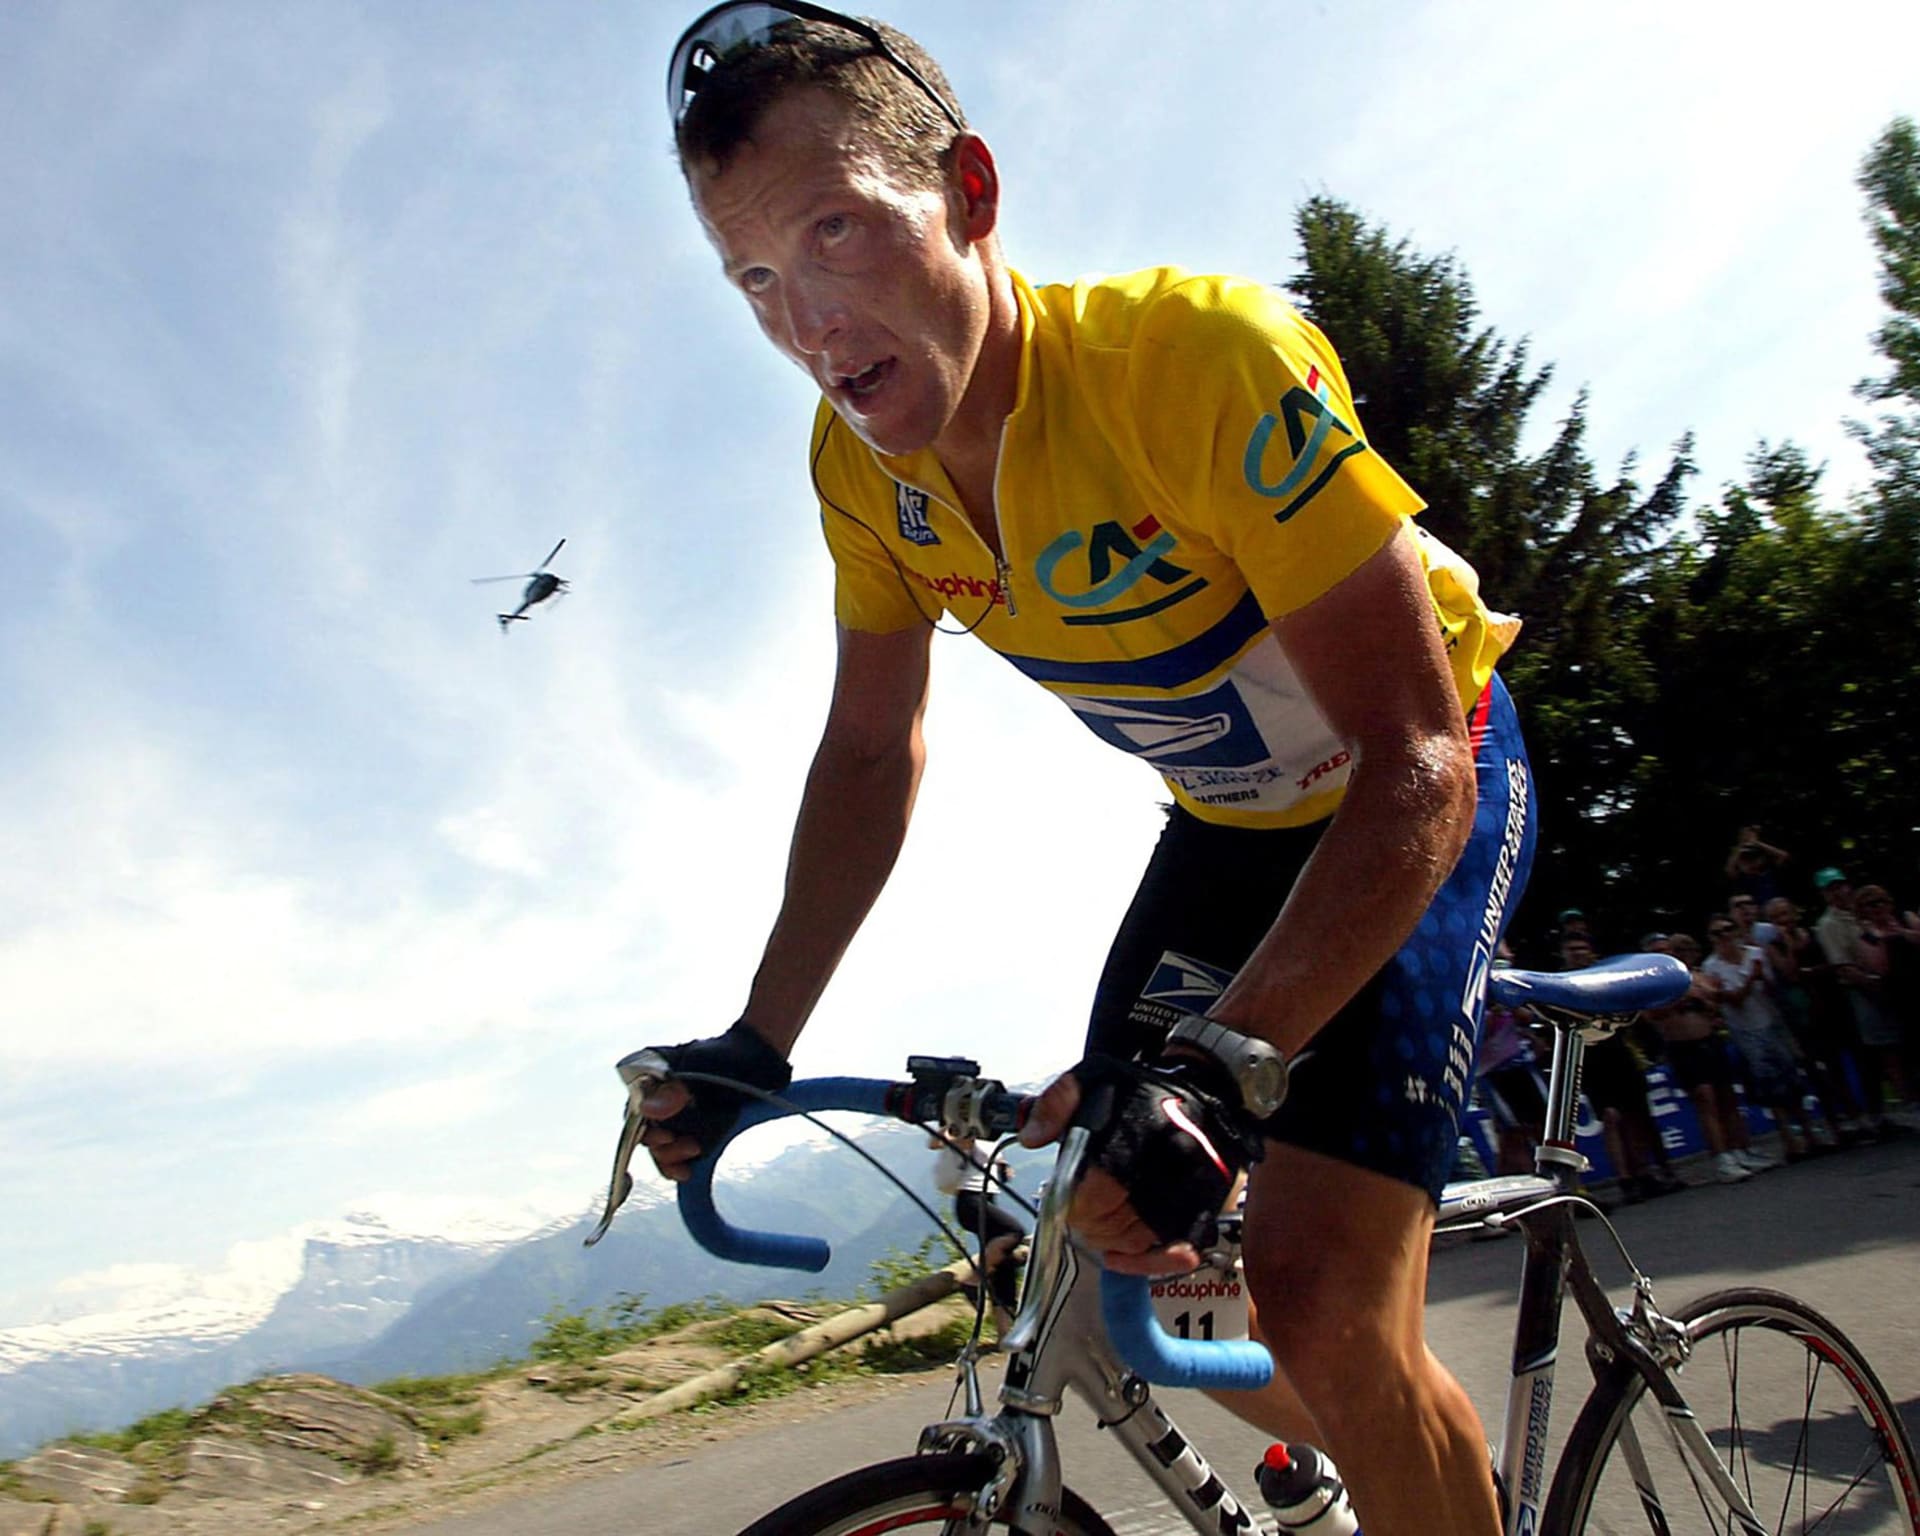 V roce 1997 Armstrong založil nadaci Livestrong zaměřenou na boj proti onkologickým chorobám. V čele nadace skončil v listopadu 2012 kvůli dopingovému skandálu.